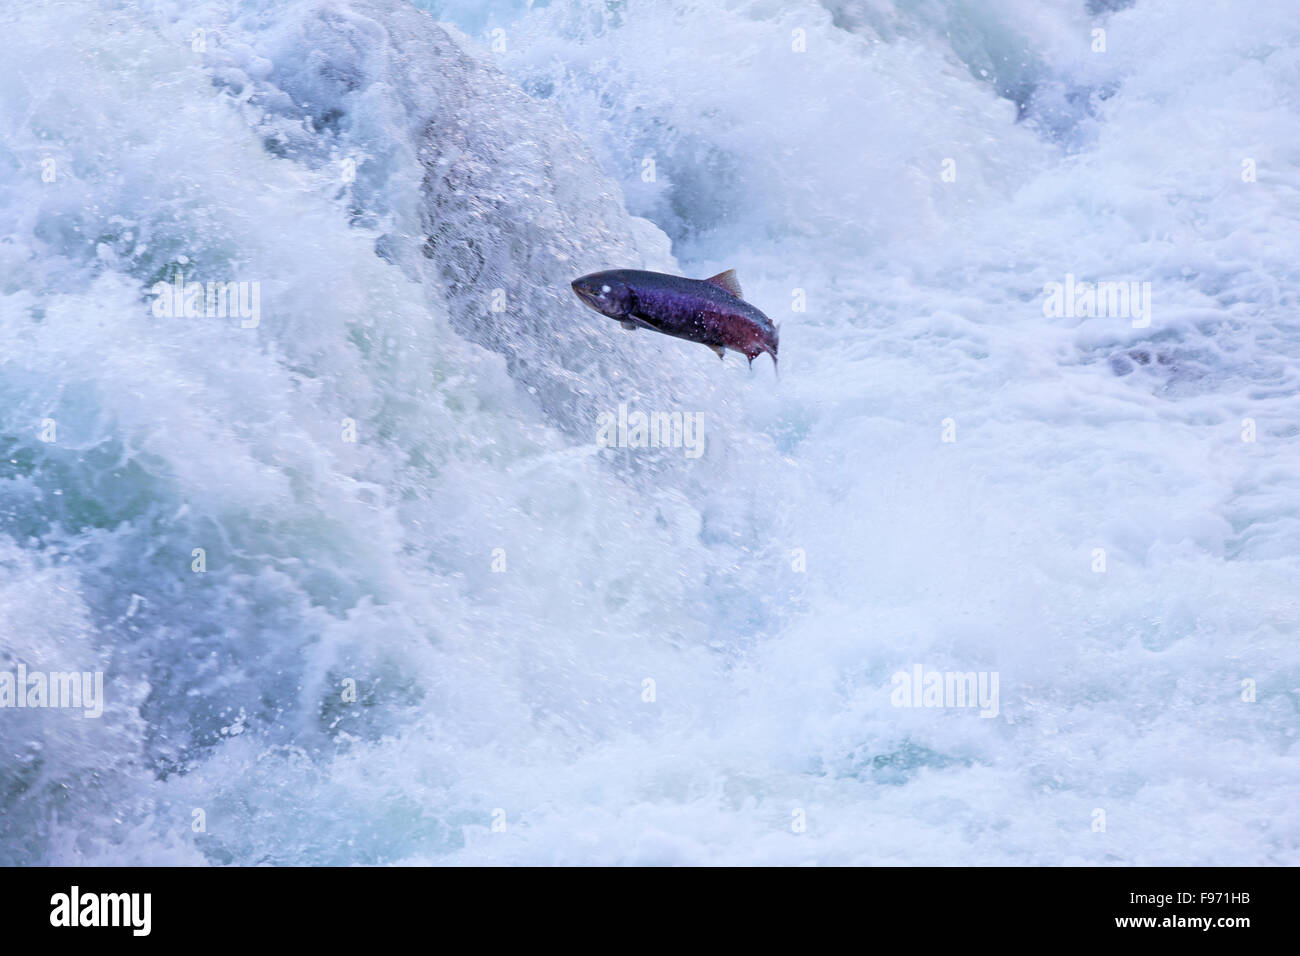 Salmones saltando la retaguardia Falls, el salmón del río Fraser ejecutar Foto de stock